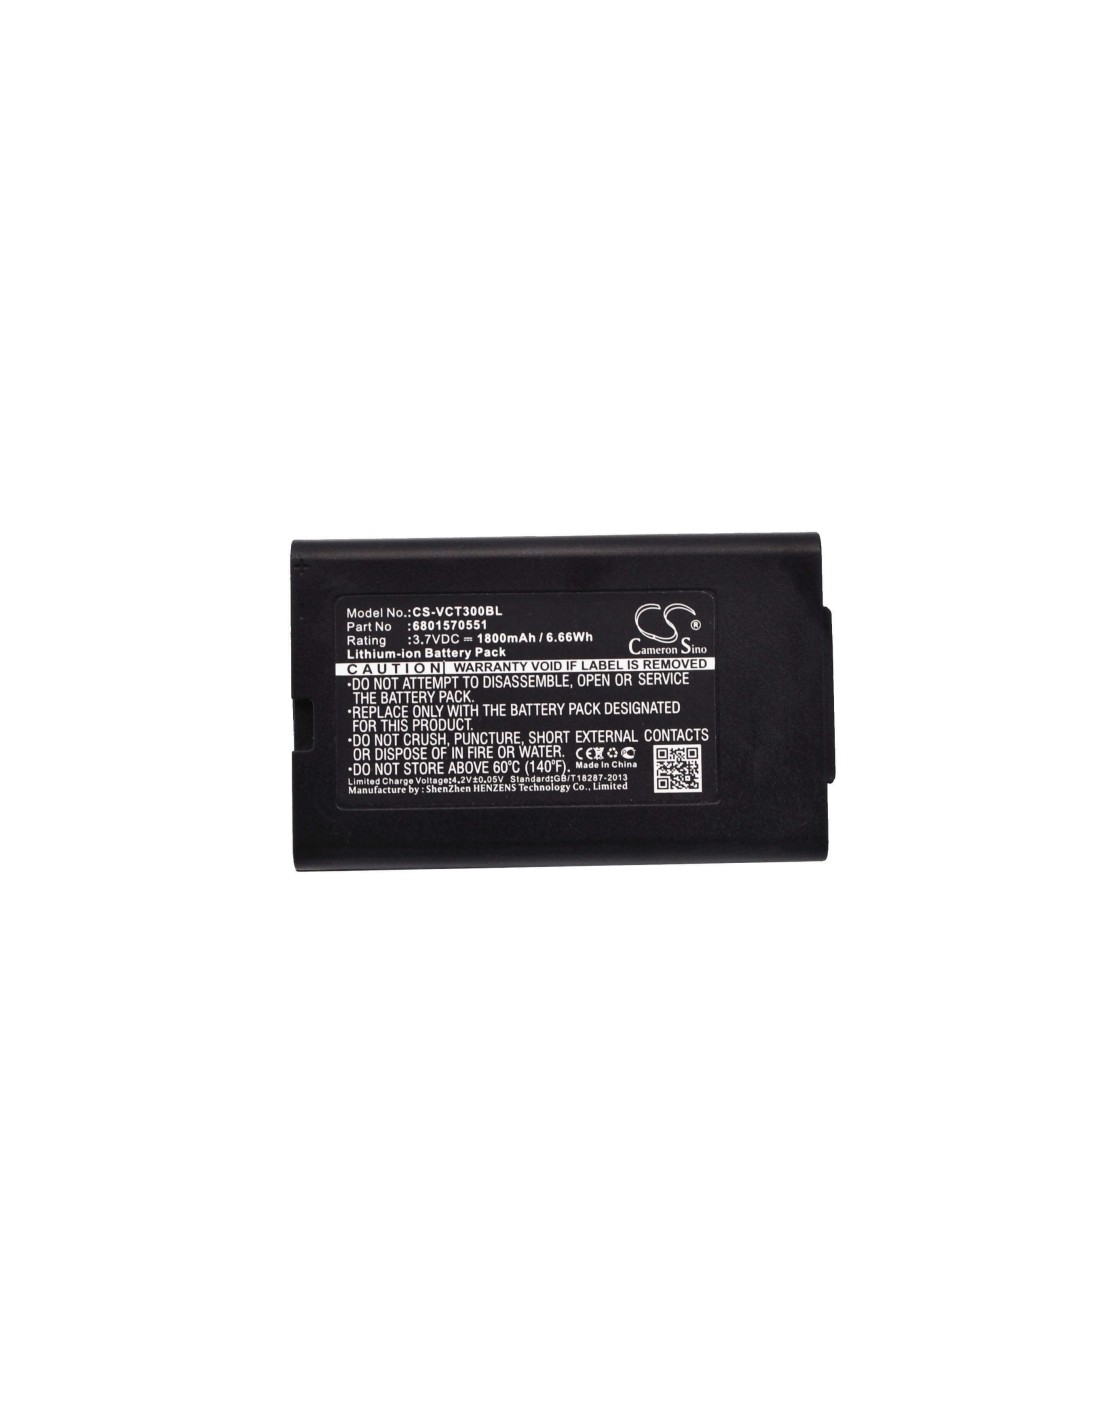 Battery for Vectron Mobilepro B30 3.7V, 1800mAh - 6.66Wh